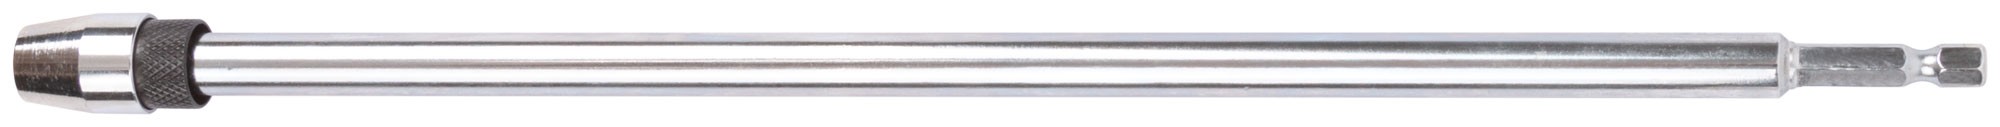 Удлинитель для перовых сверл с хвостовиком под биту ( быстрая замена сверла ) 300 мм